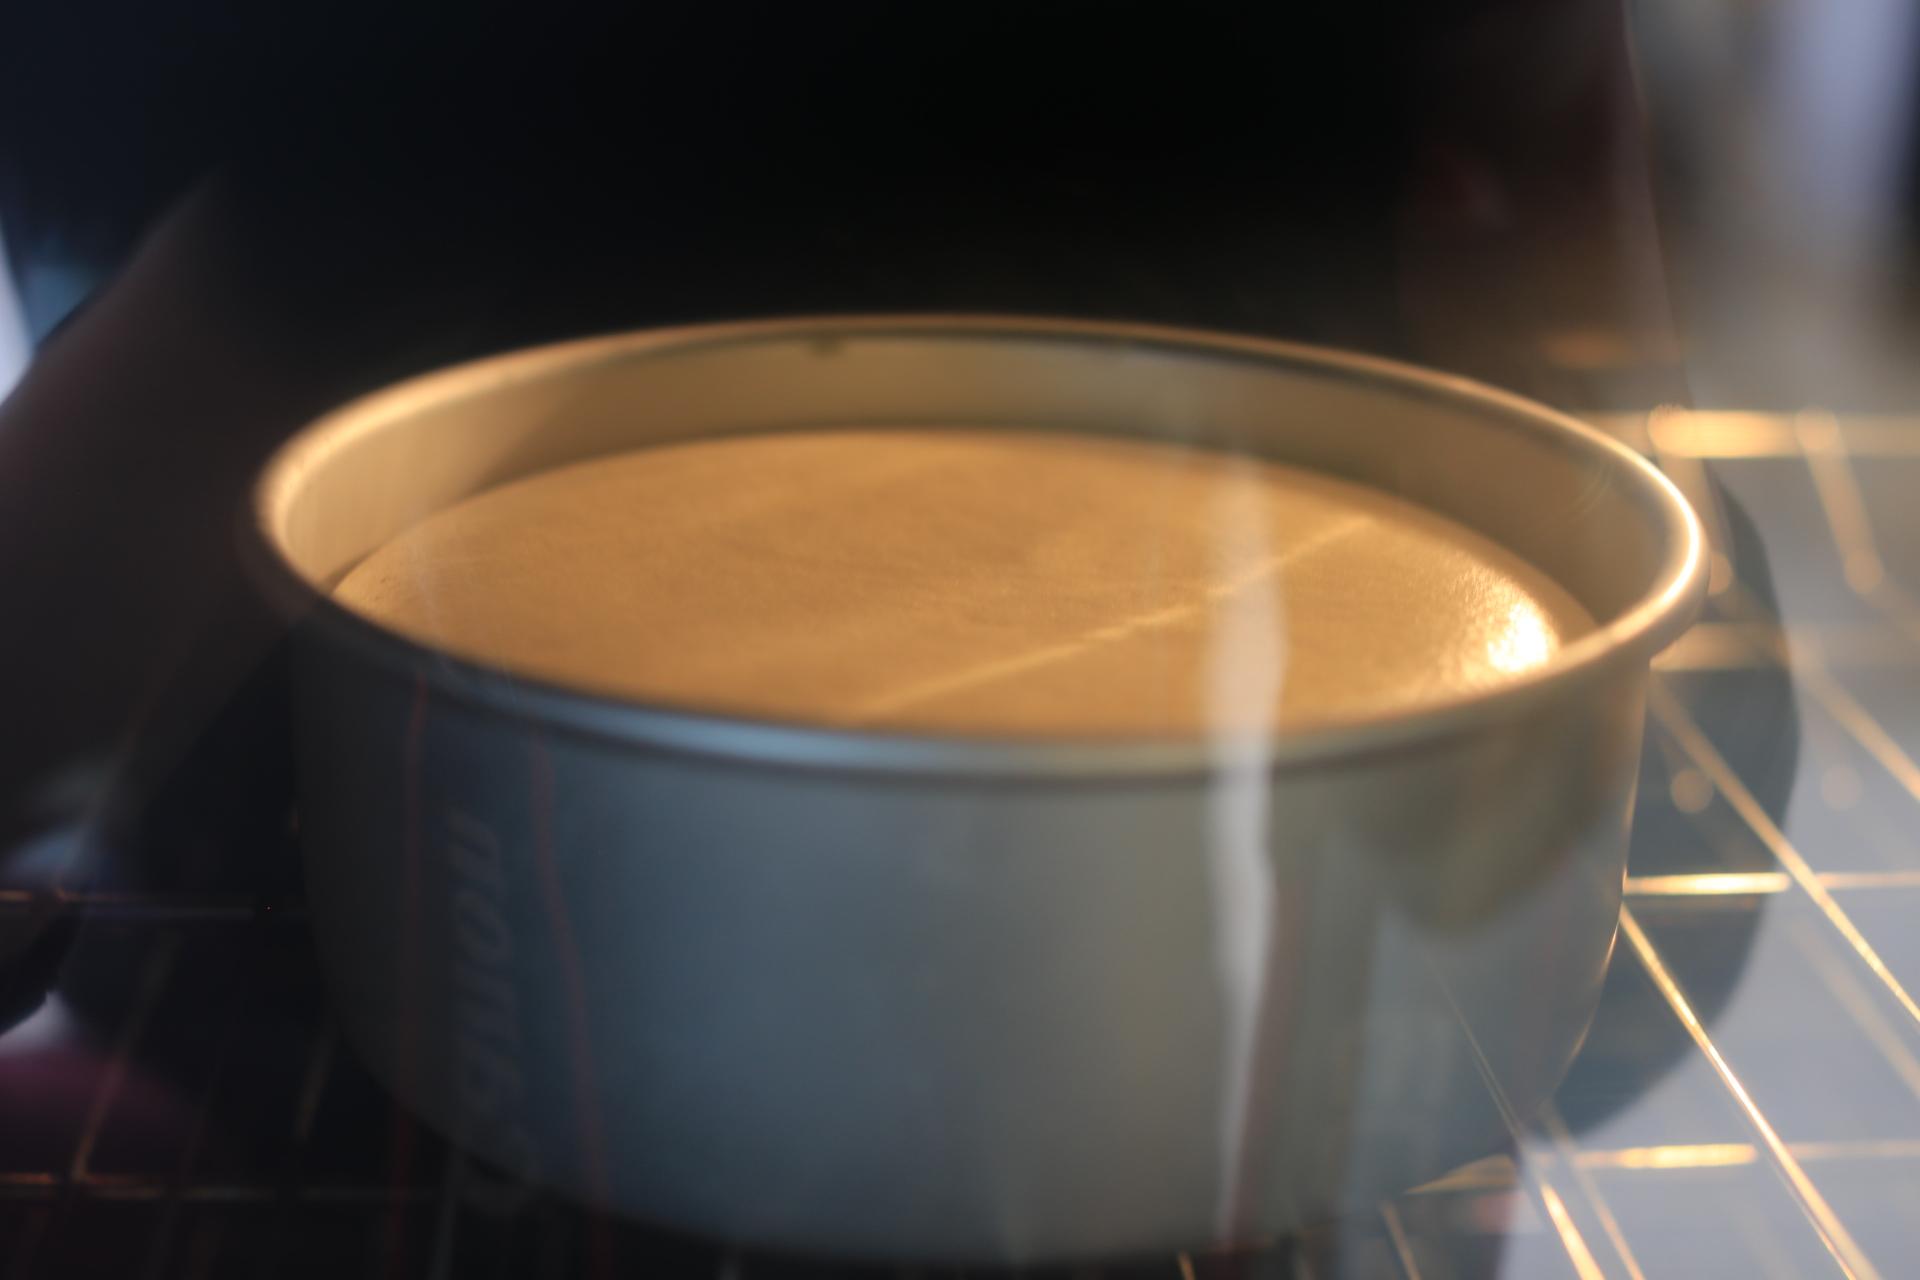 6寸 原味彩绘戚风蛋糕简单步骤却能烤出颜值超高的豹纹戚风蛋糕的做法步骤图 - 君之博客|阳光烘站